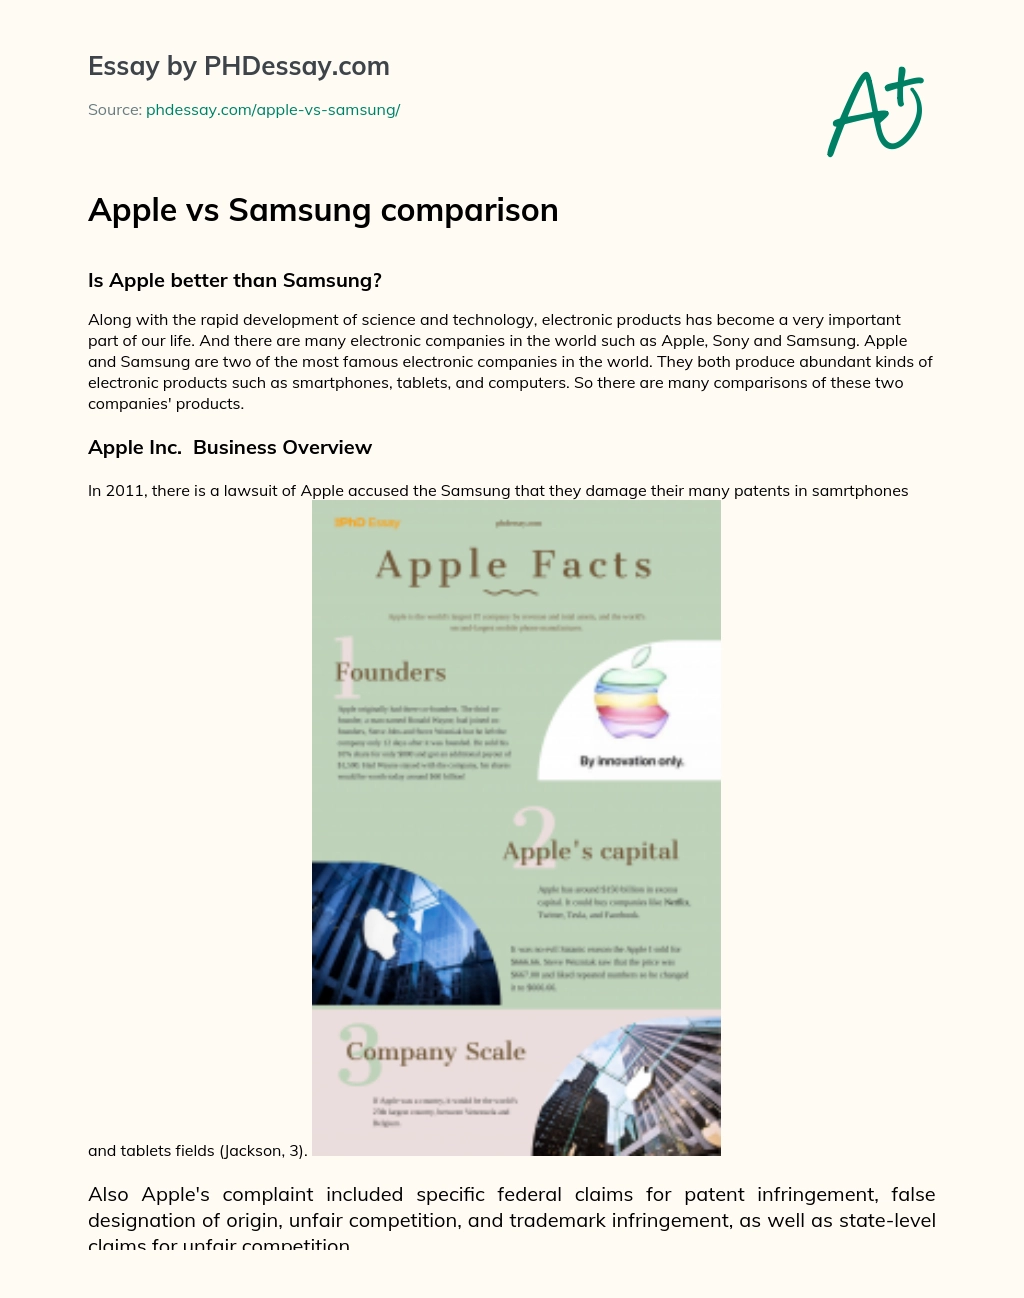 Apple vs Samsung comparison essay